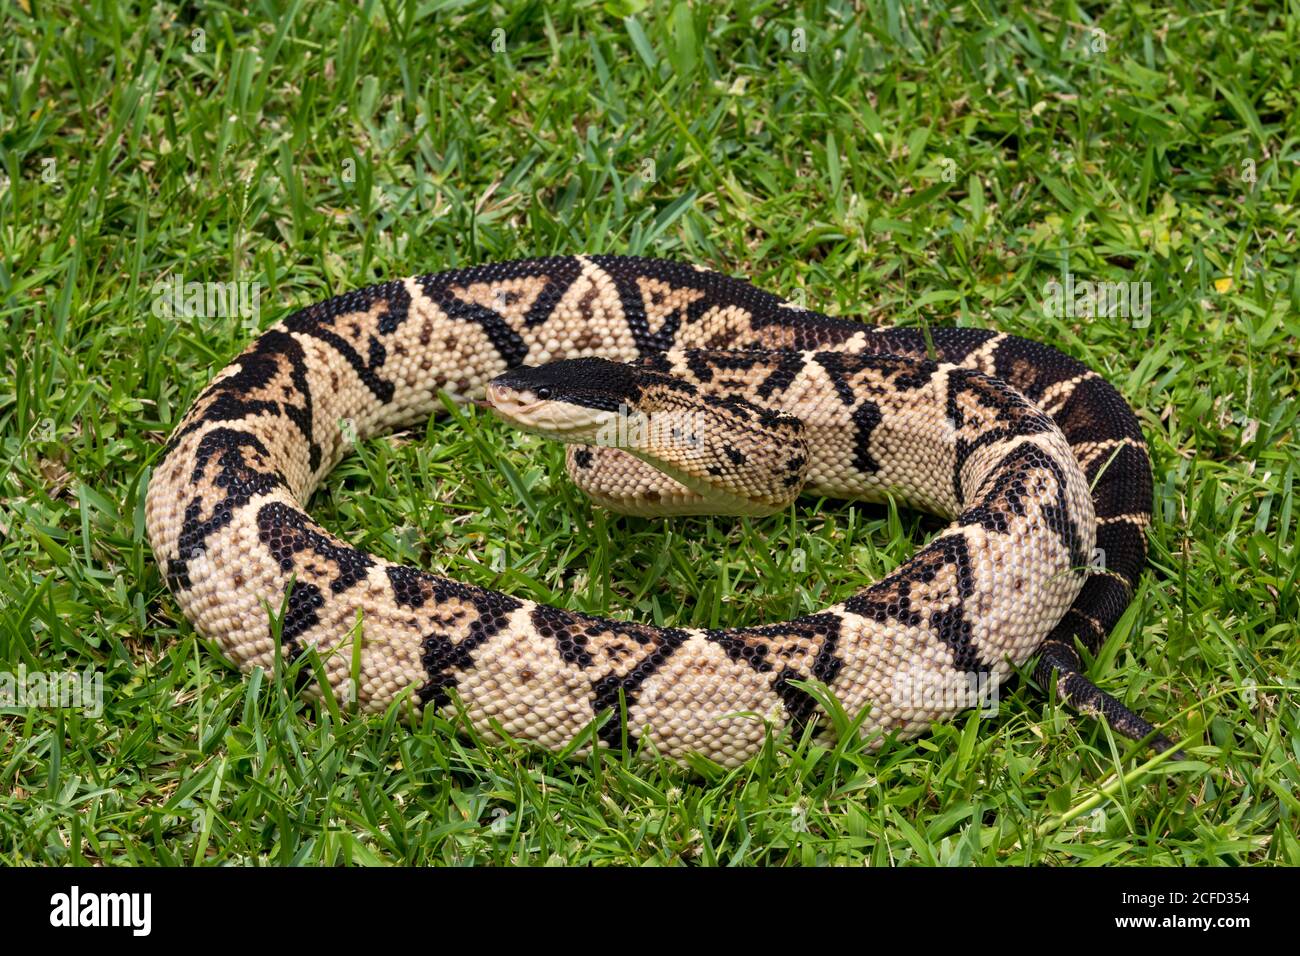 Lachesis melanocephala ist die größte giftige Schlange in Costa Rica und endemisch im Land, nur im südlichen pa gefunden Stockfoto